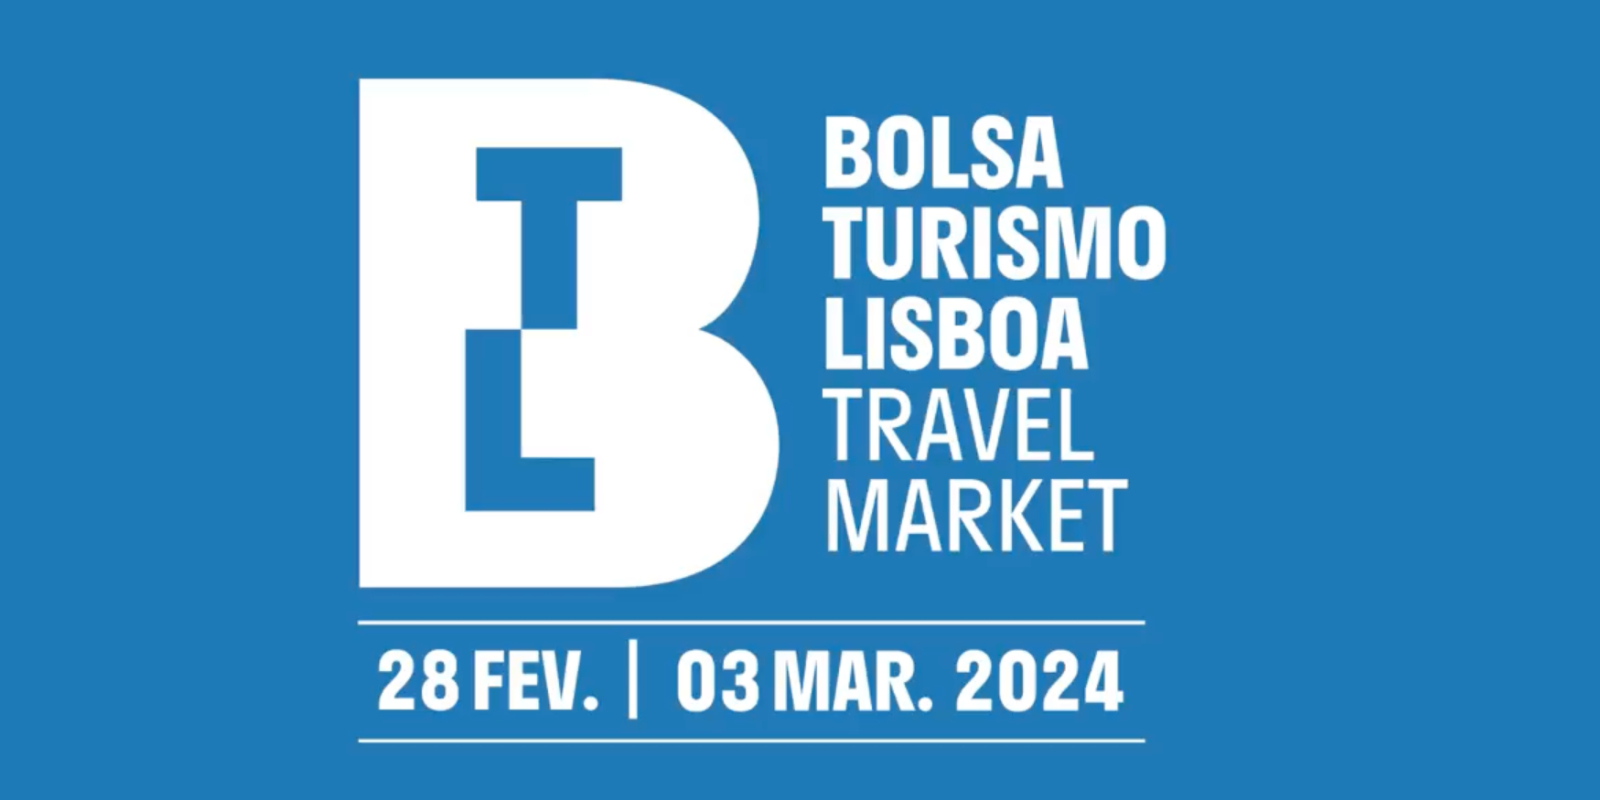 bolsa turismo lisboa travel market se llevará a cabo el 28 de febrero y el 3 de marzo de 2024